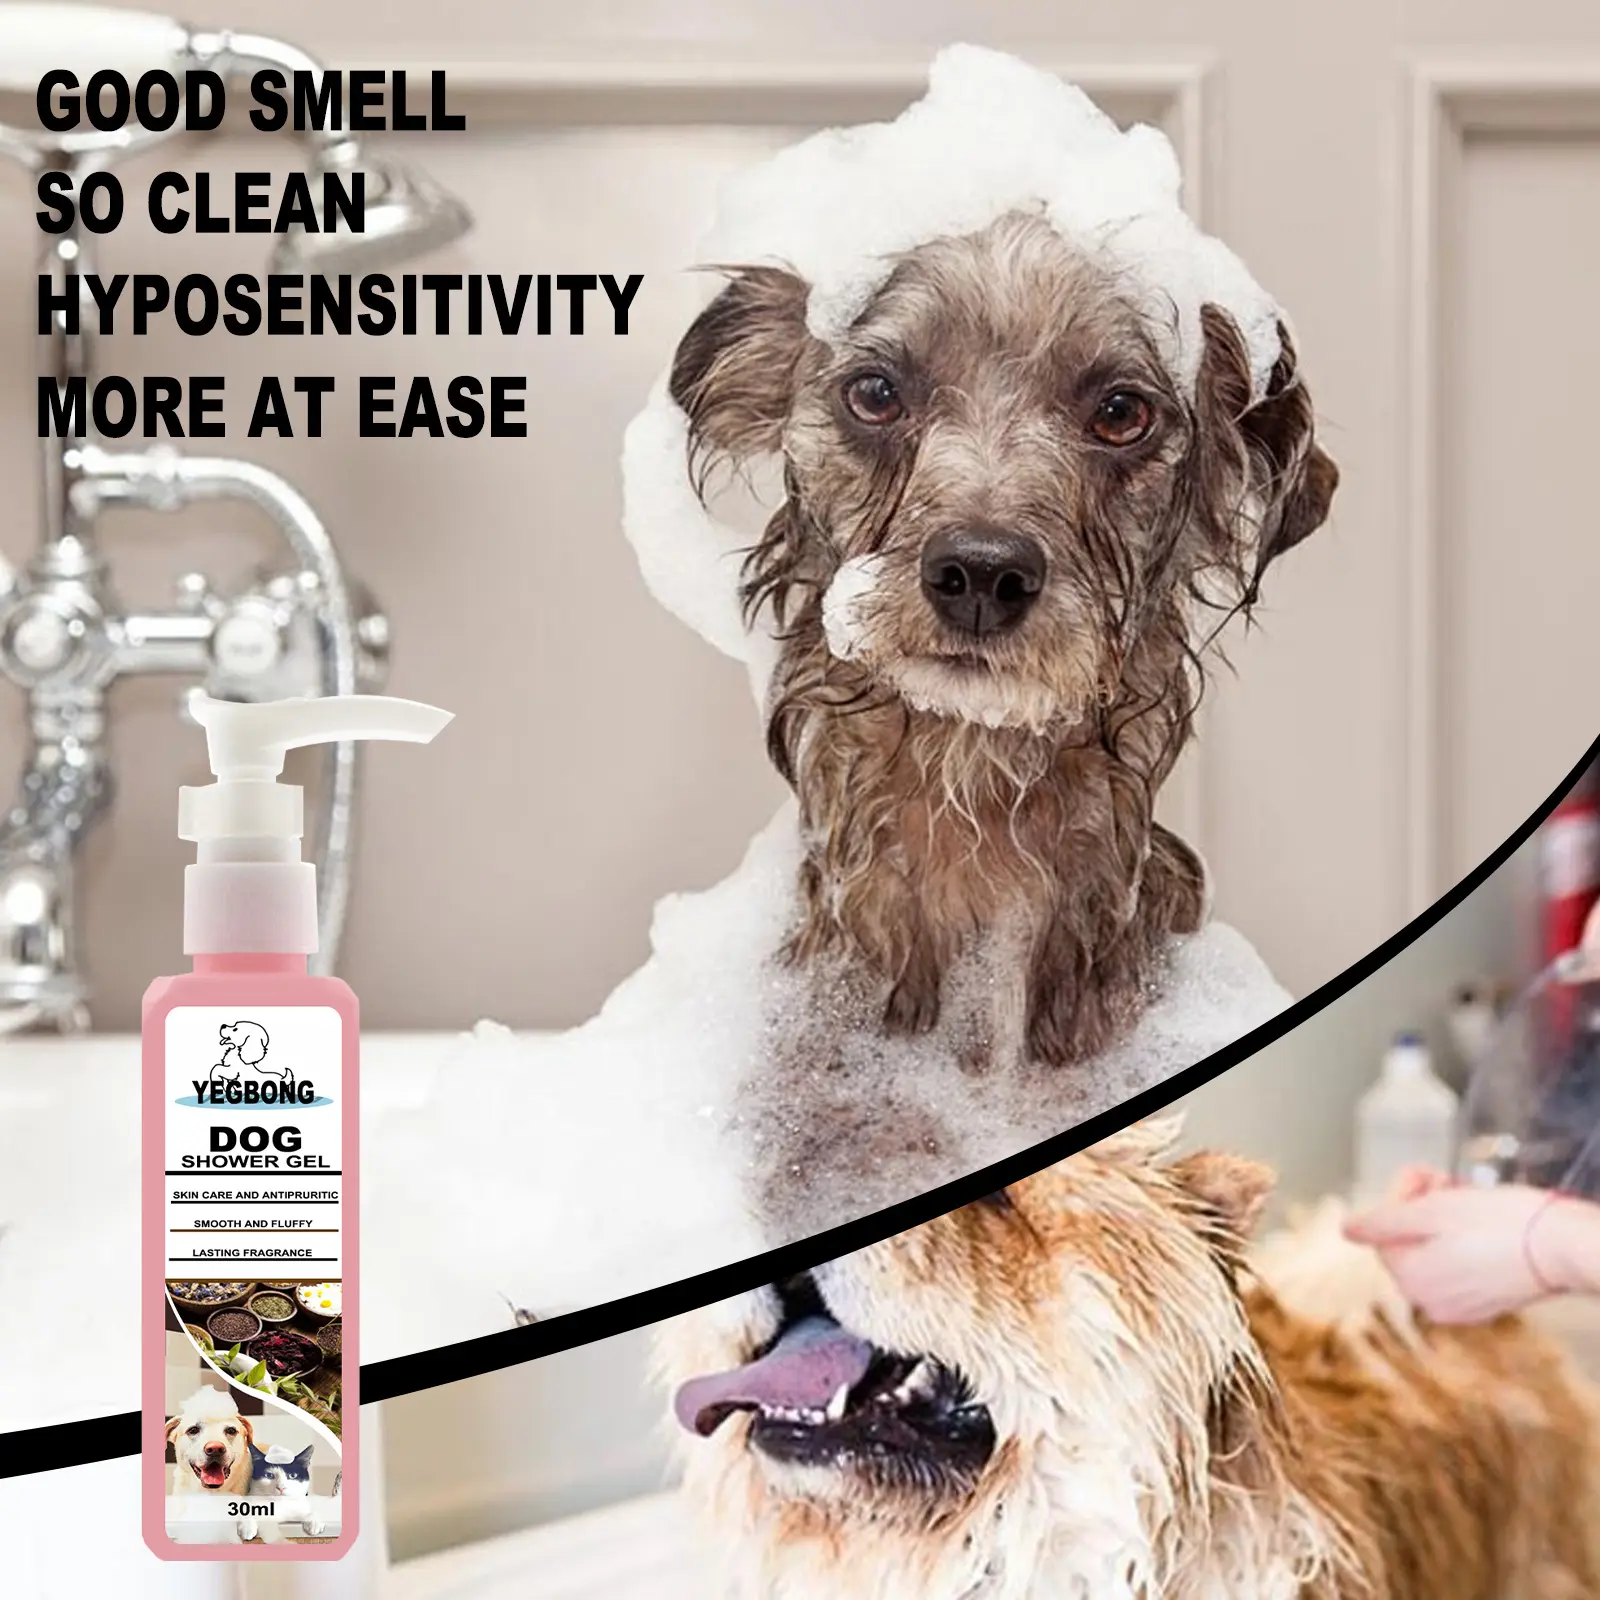 Champú orgánico de marca privada para mascotas, limpieza de mascotas, baño, planta, aceite esencial, champú antipicaduras para perros y gatos